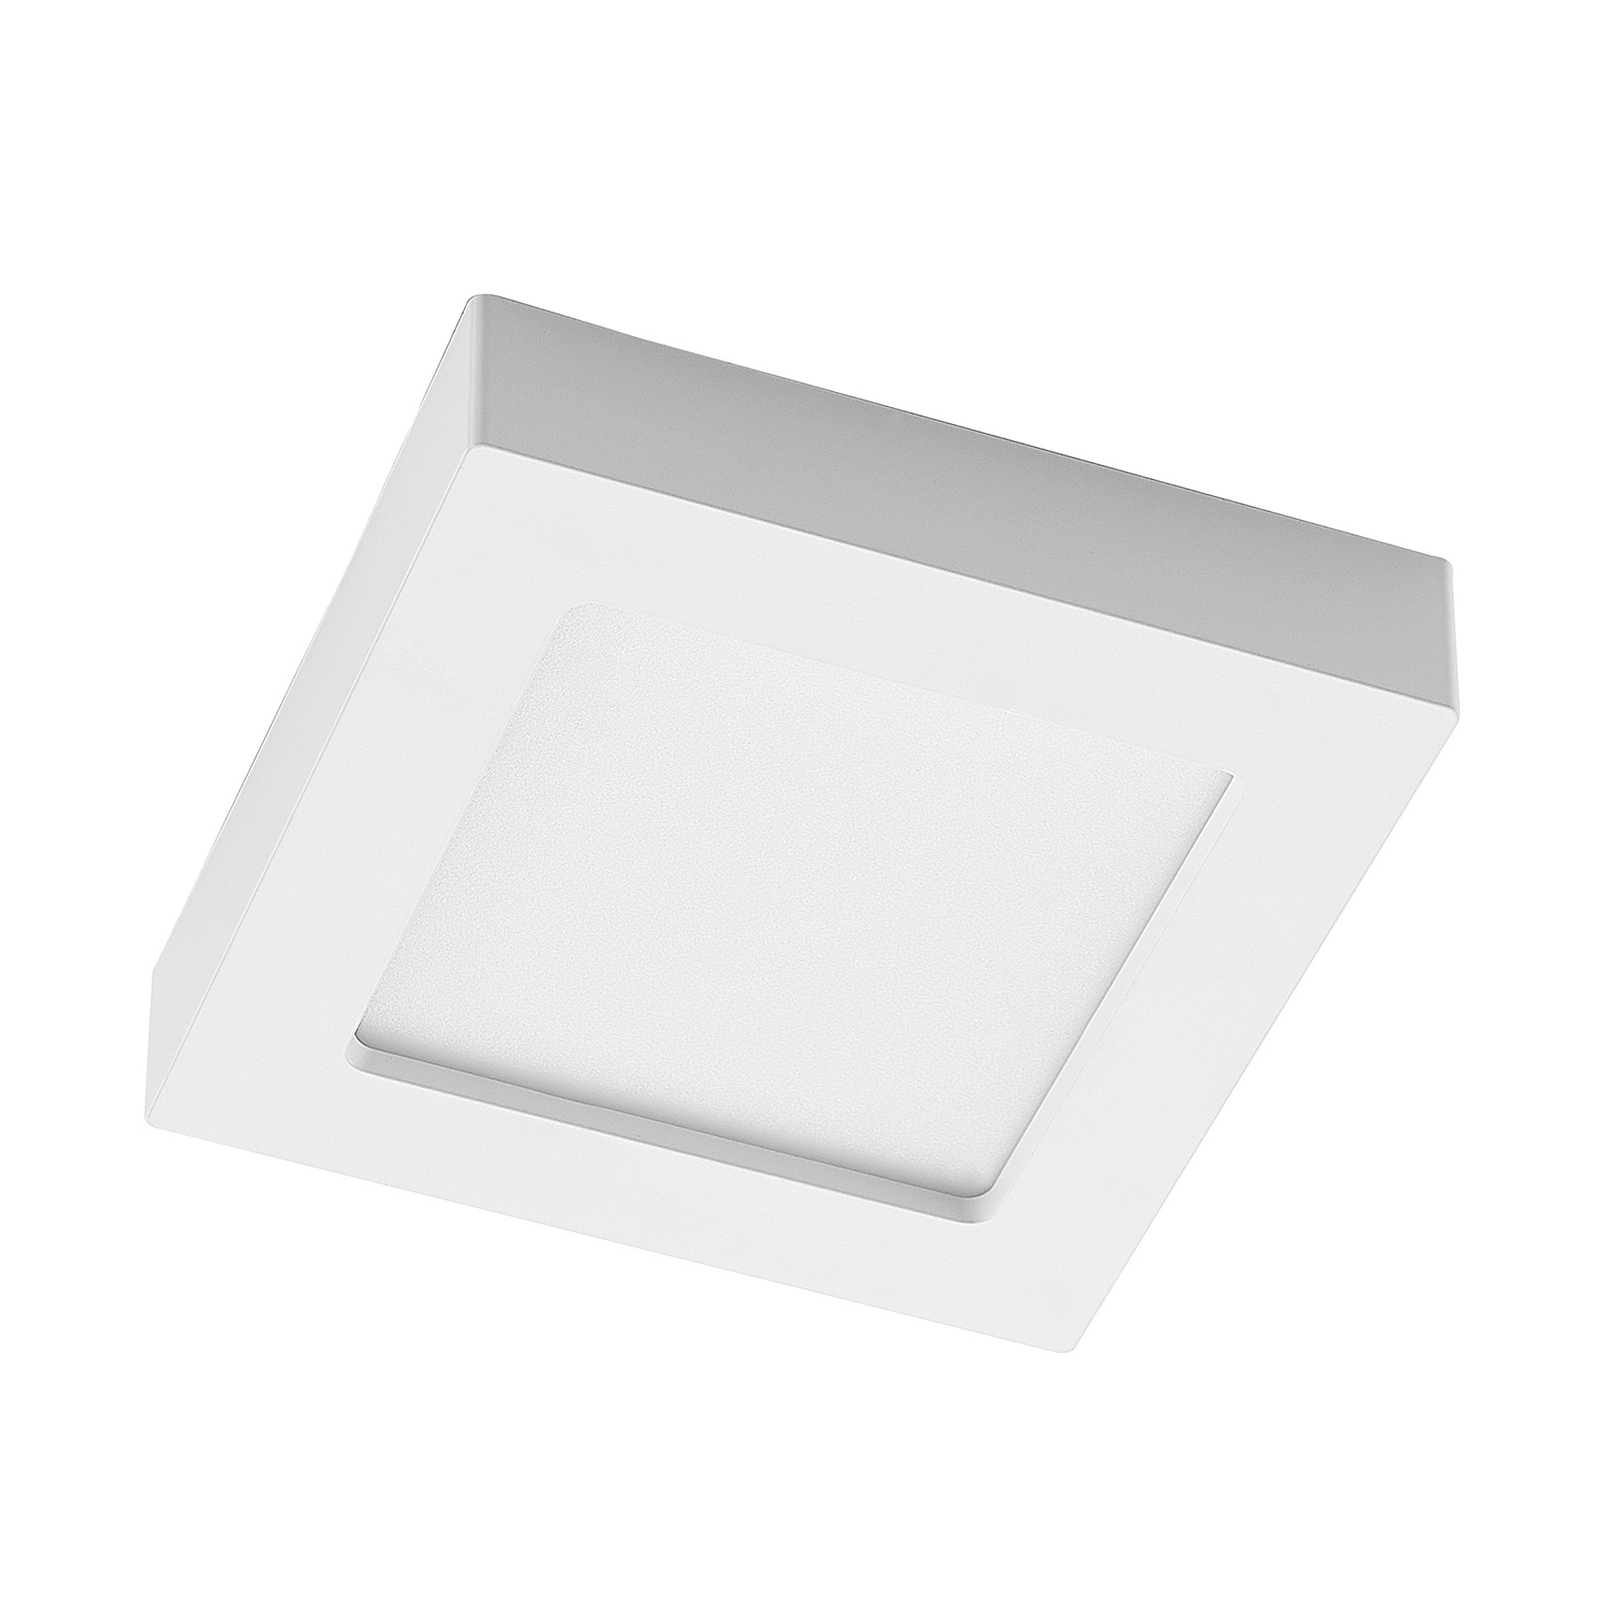 Prios Alette LED-Deckenleuchte, weiß, 17,2 cm